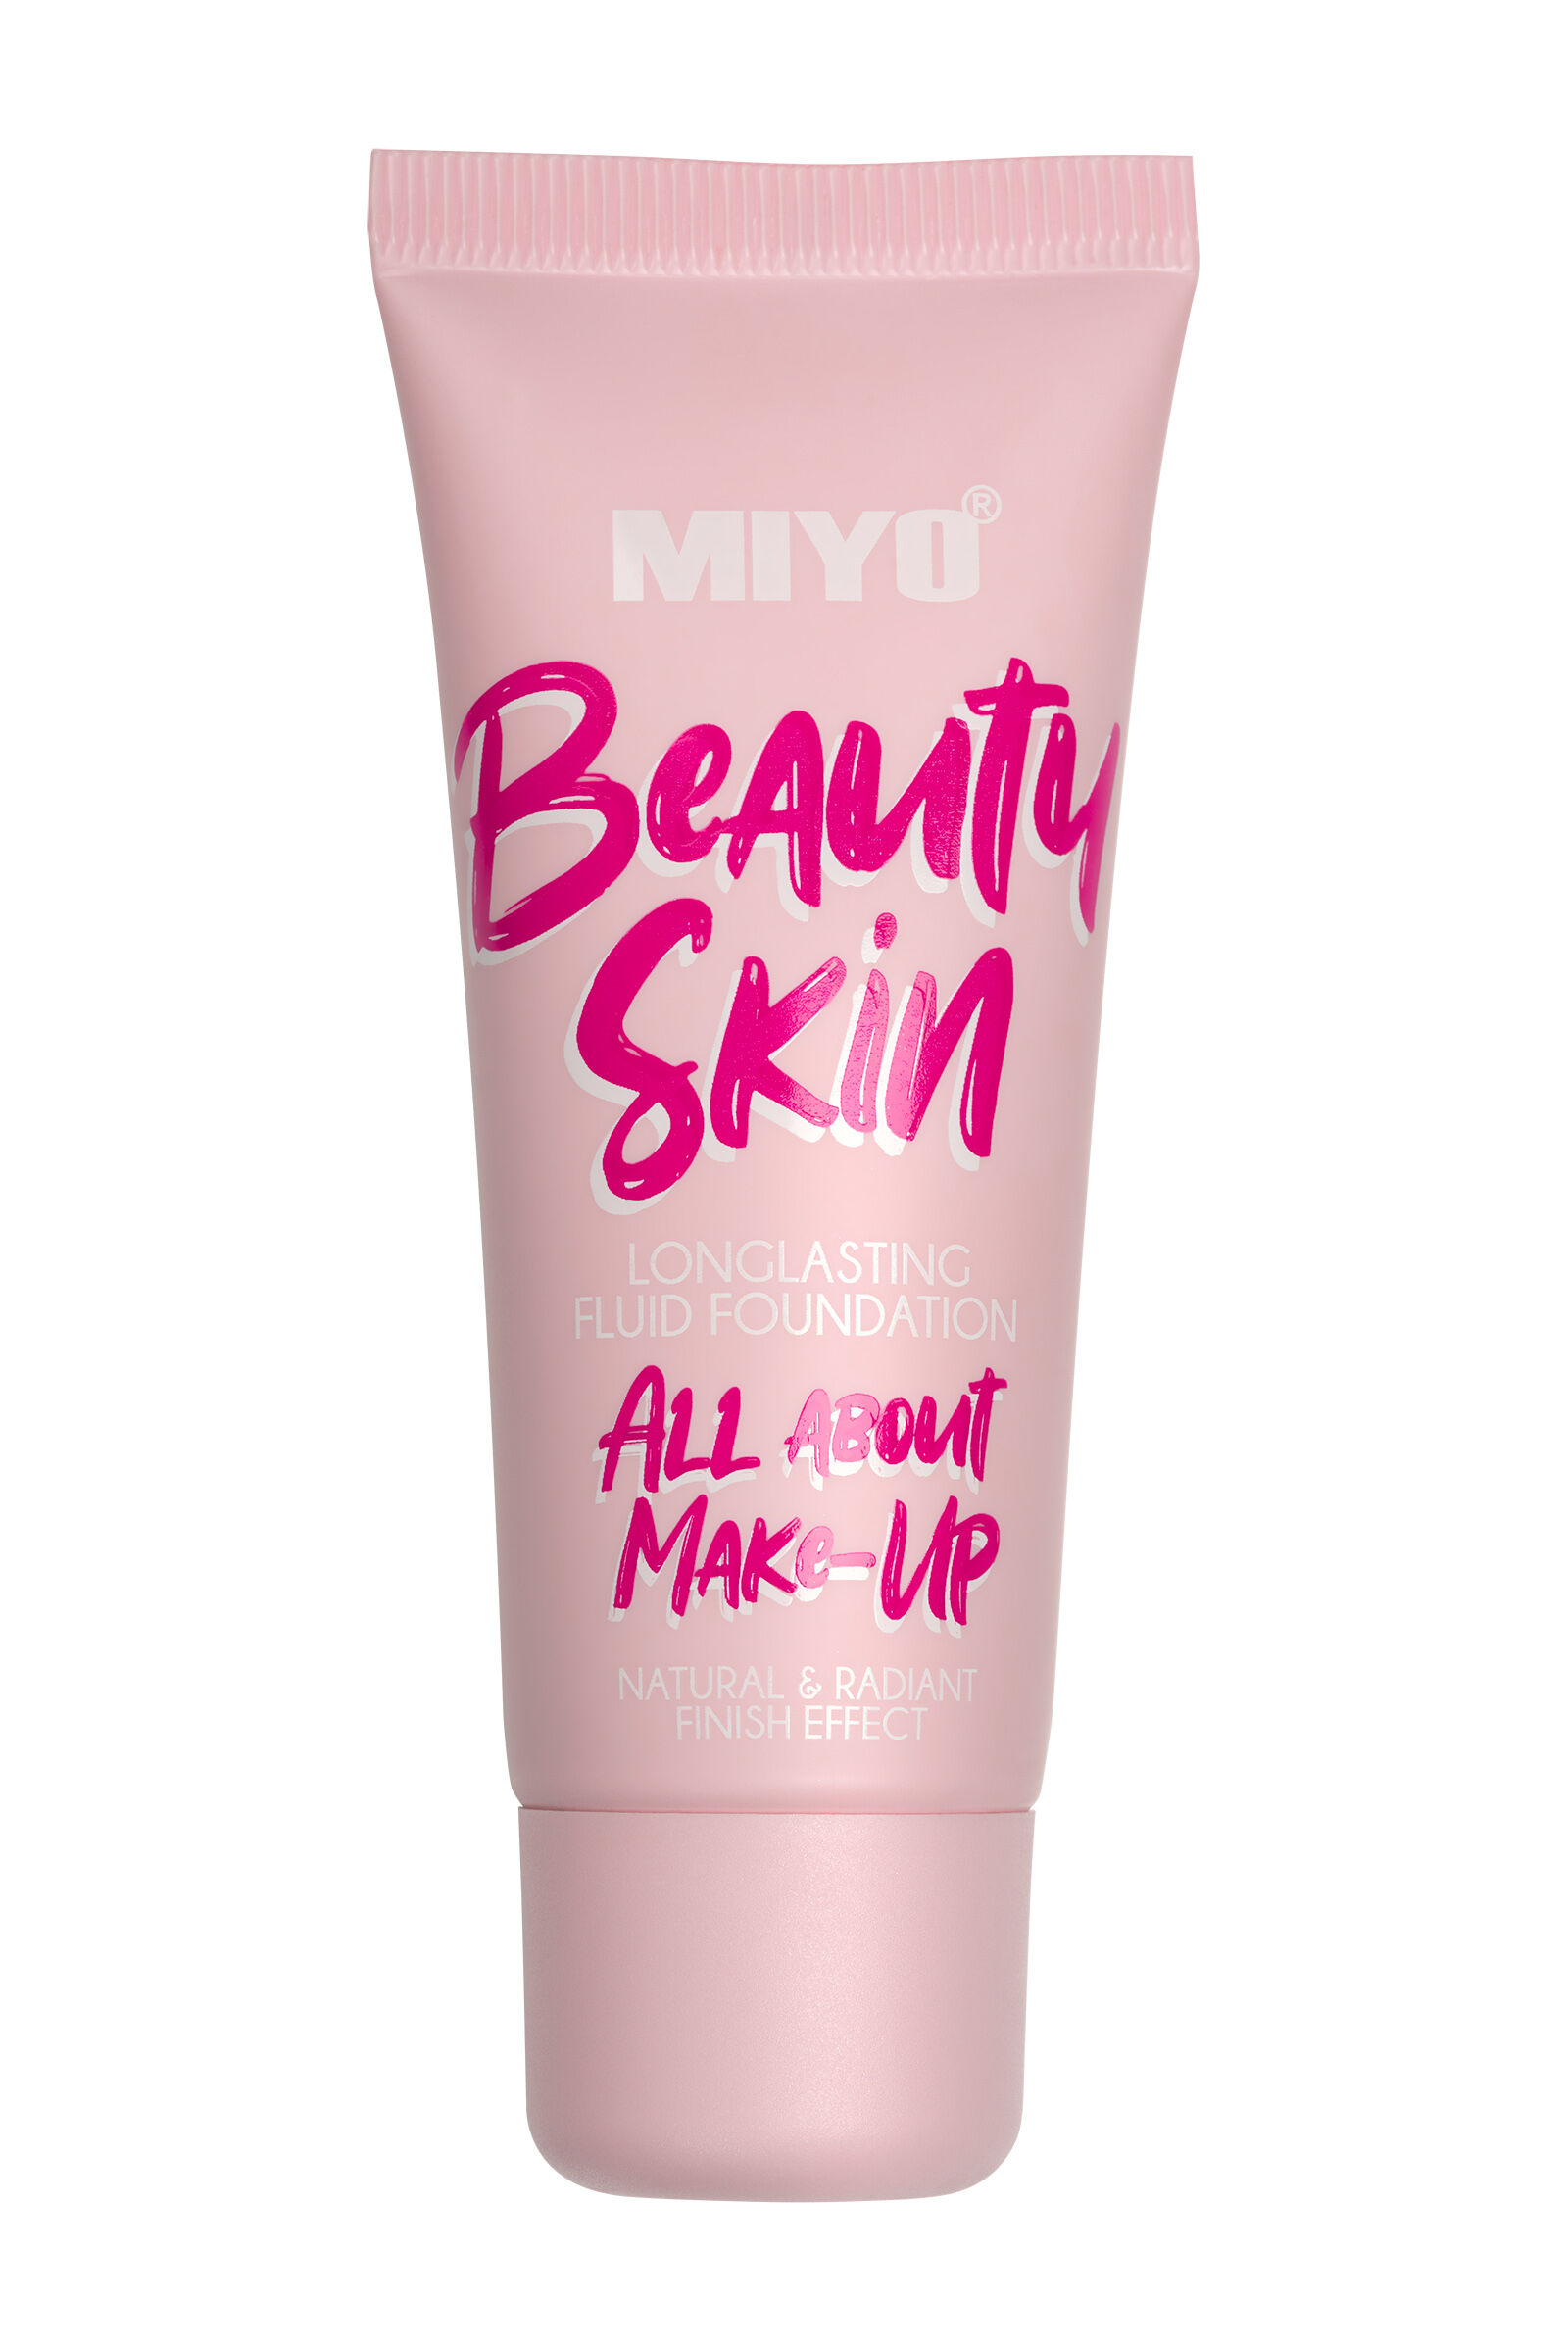 Тональный крем для лица Miyo Beauty Skin, 30 мл